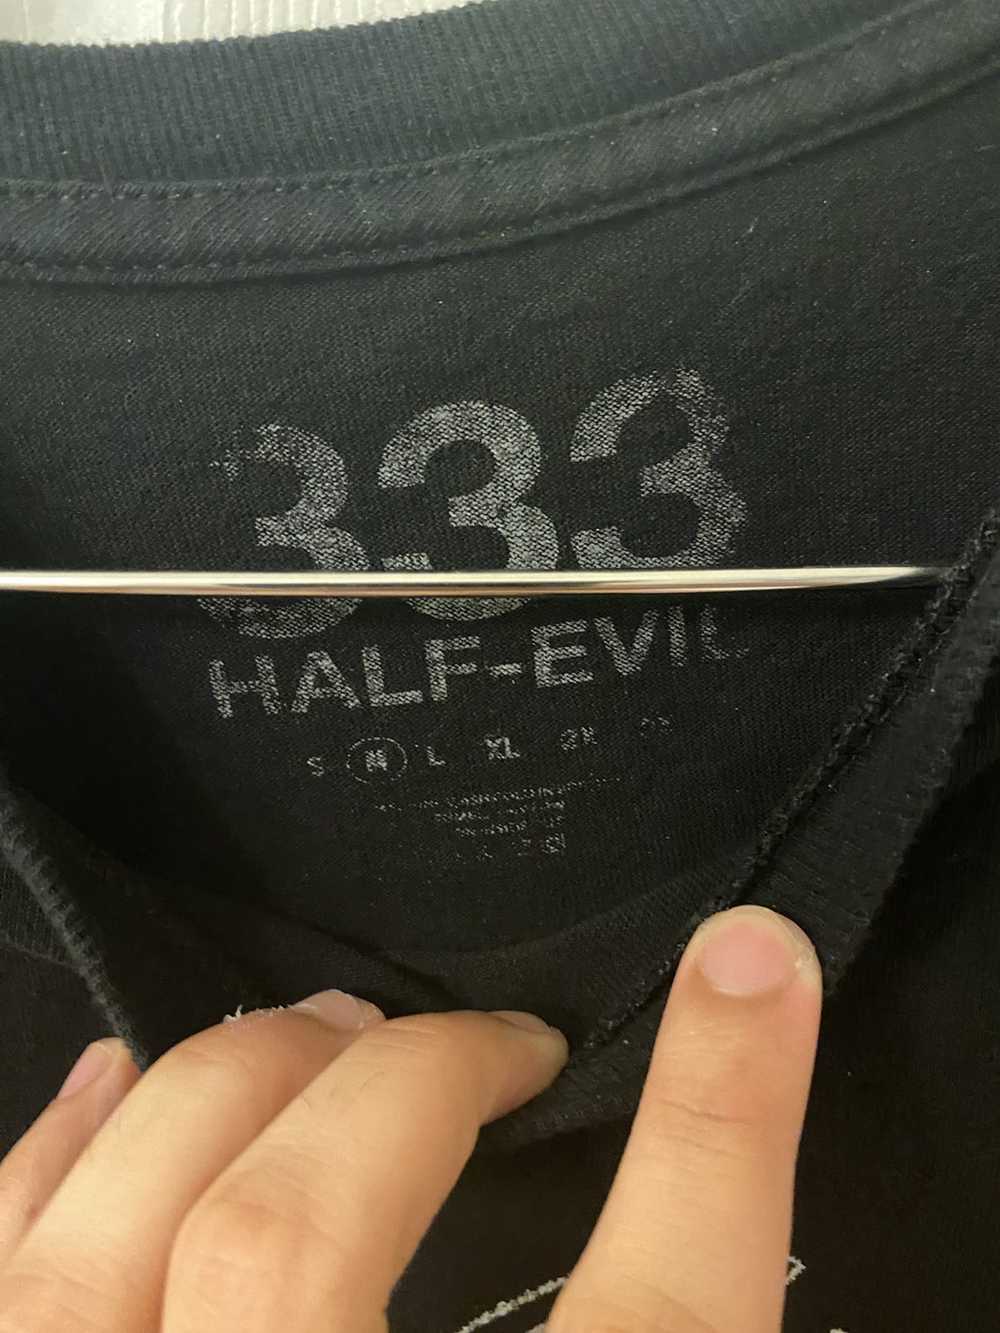 Half Evil Half evil x Kodone tee - image 3